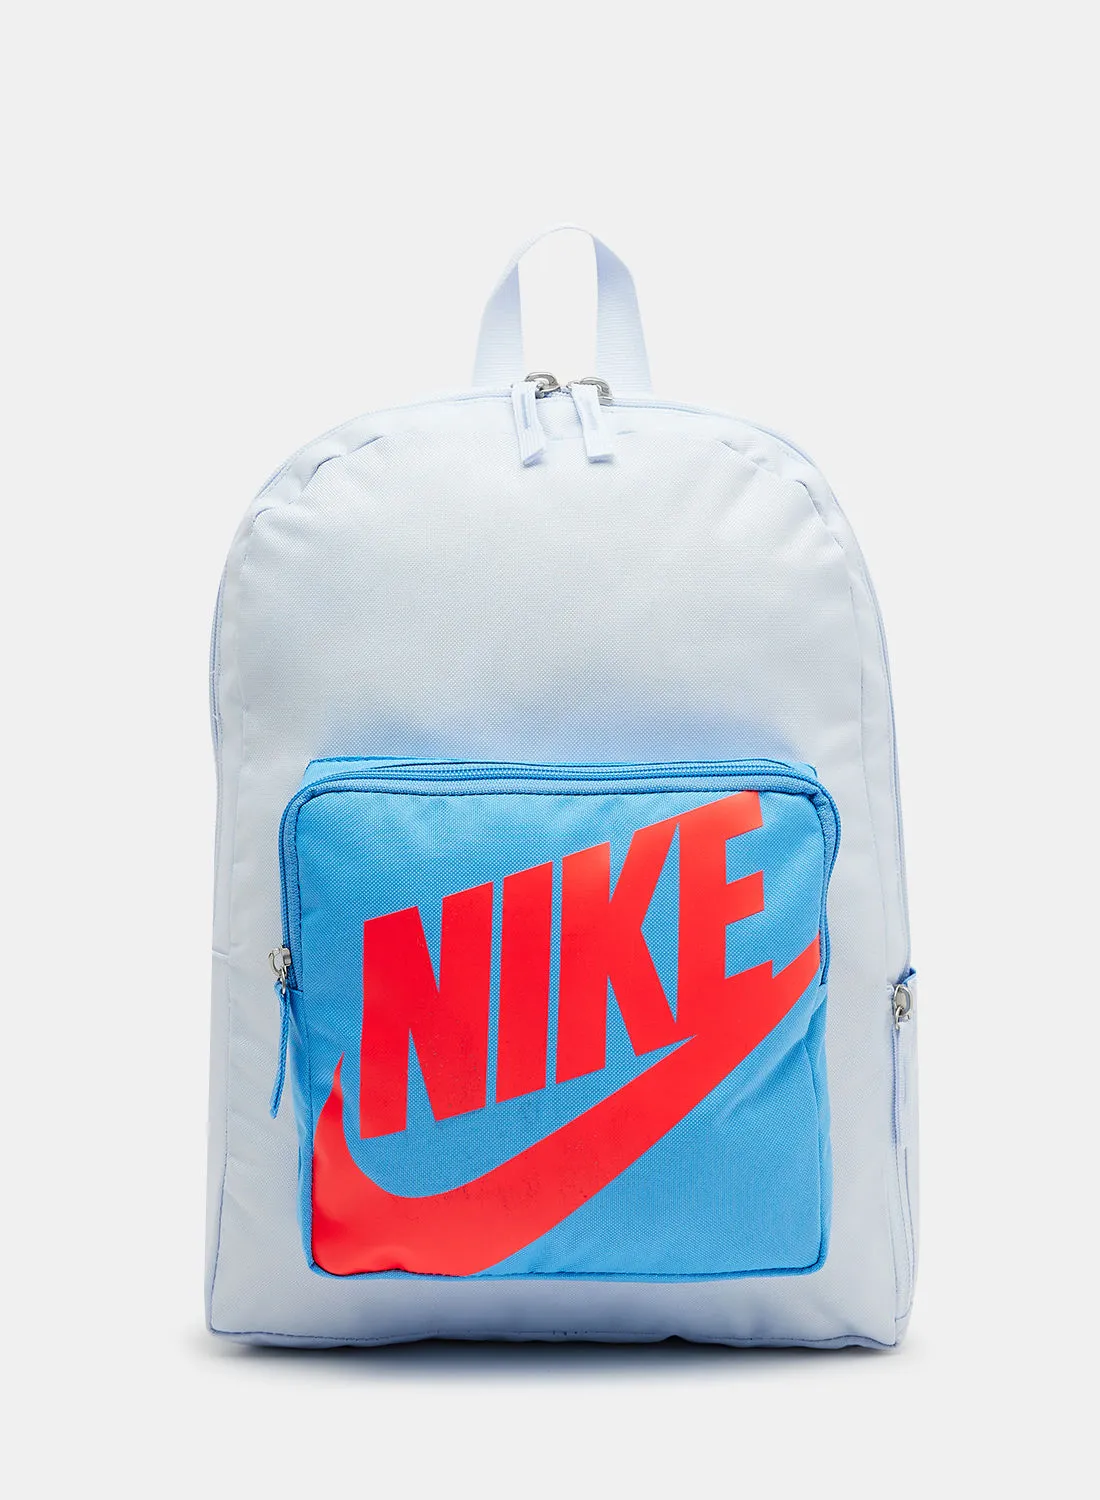 Nike Kids Unisex Classic Training Backpack